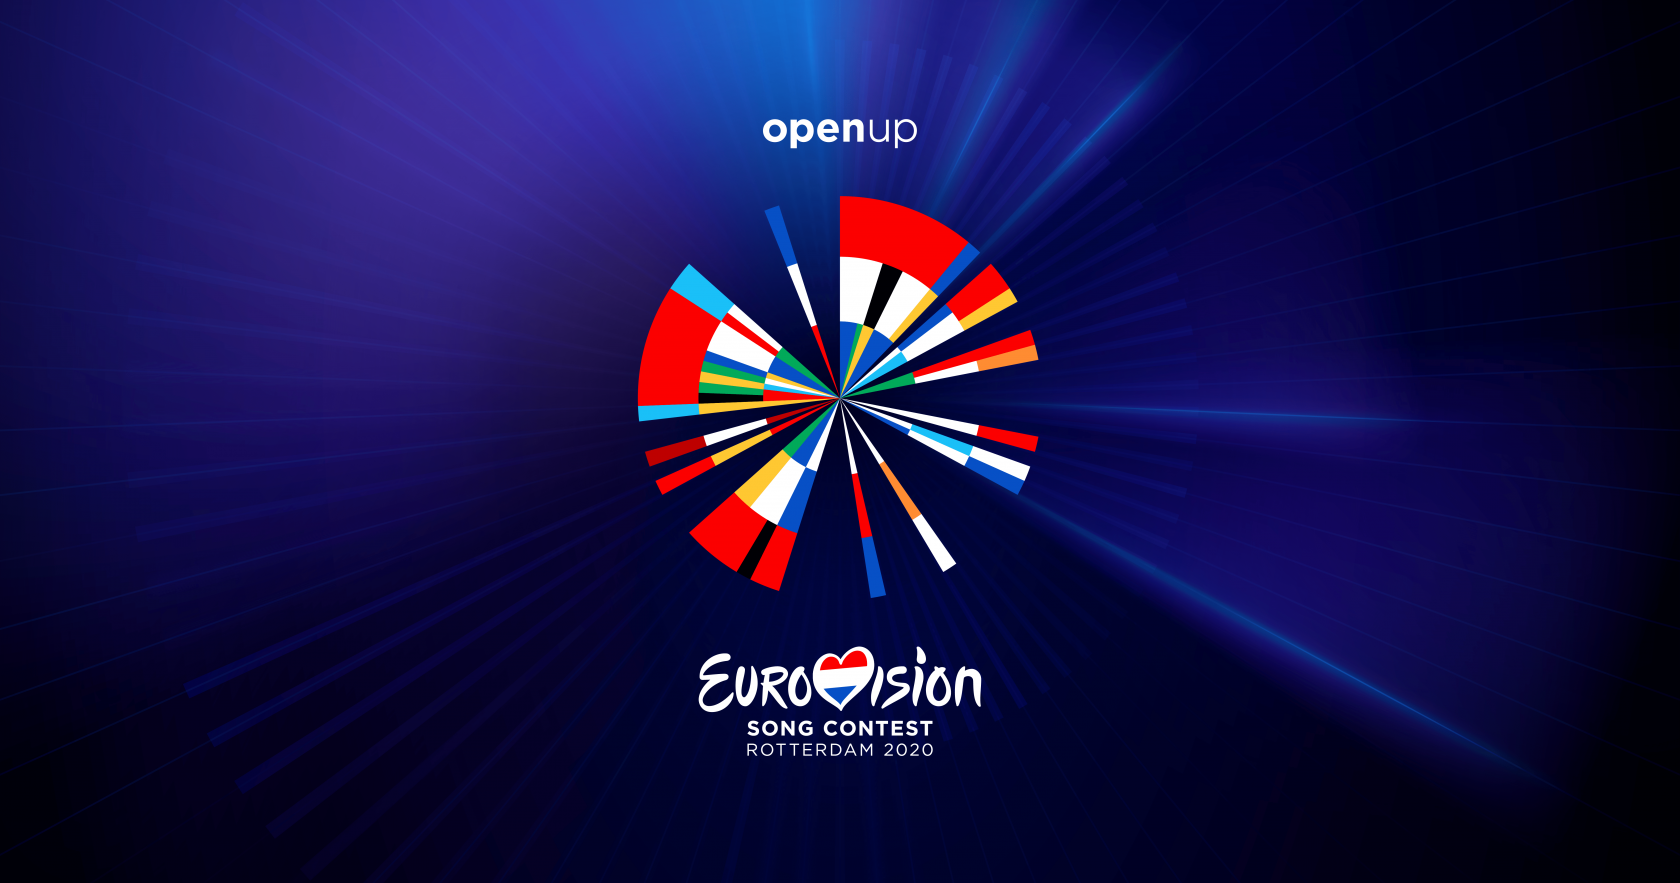 Αυτή θα ήταν η σειρά εμφάνισης του πρώτου ημιτελικού για την Eurovision 2020 – Στην 13η θέση θα εμφανιζόταν η Κύπρος!